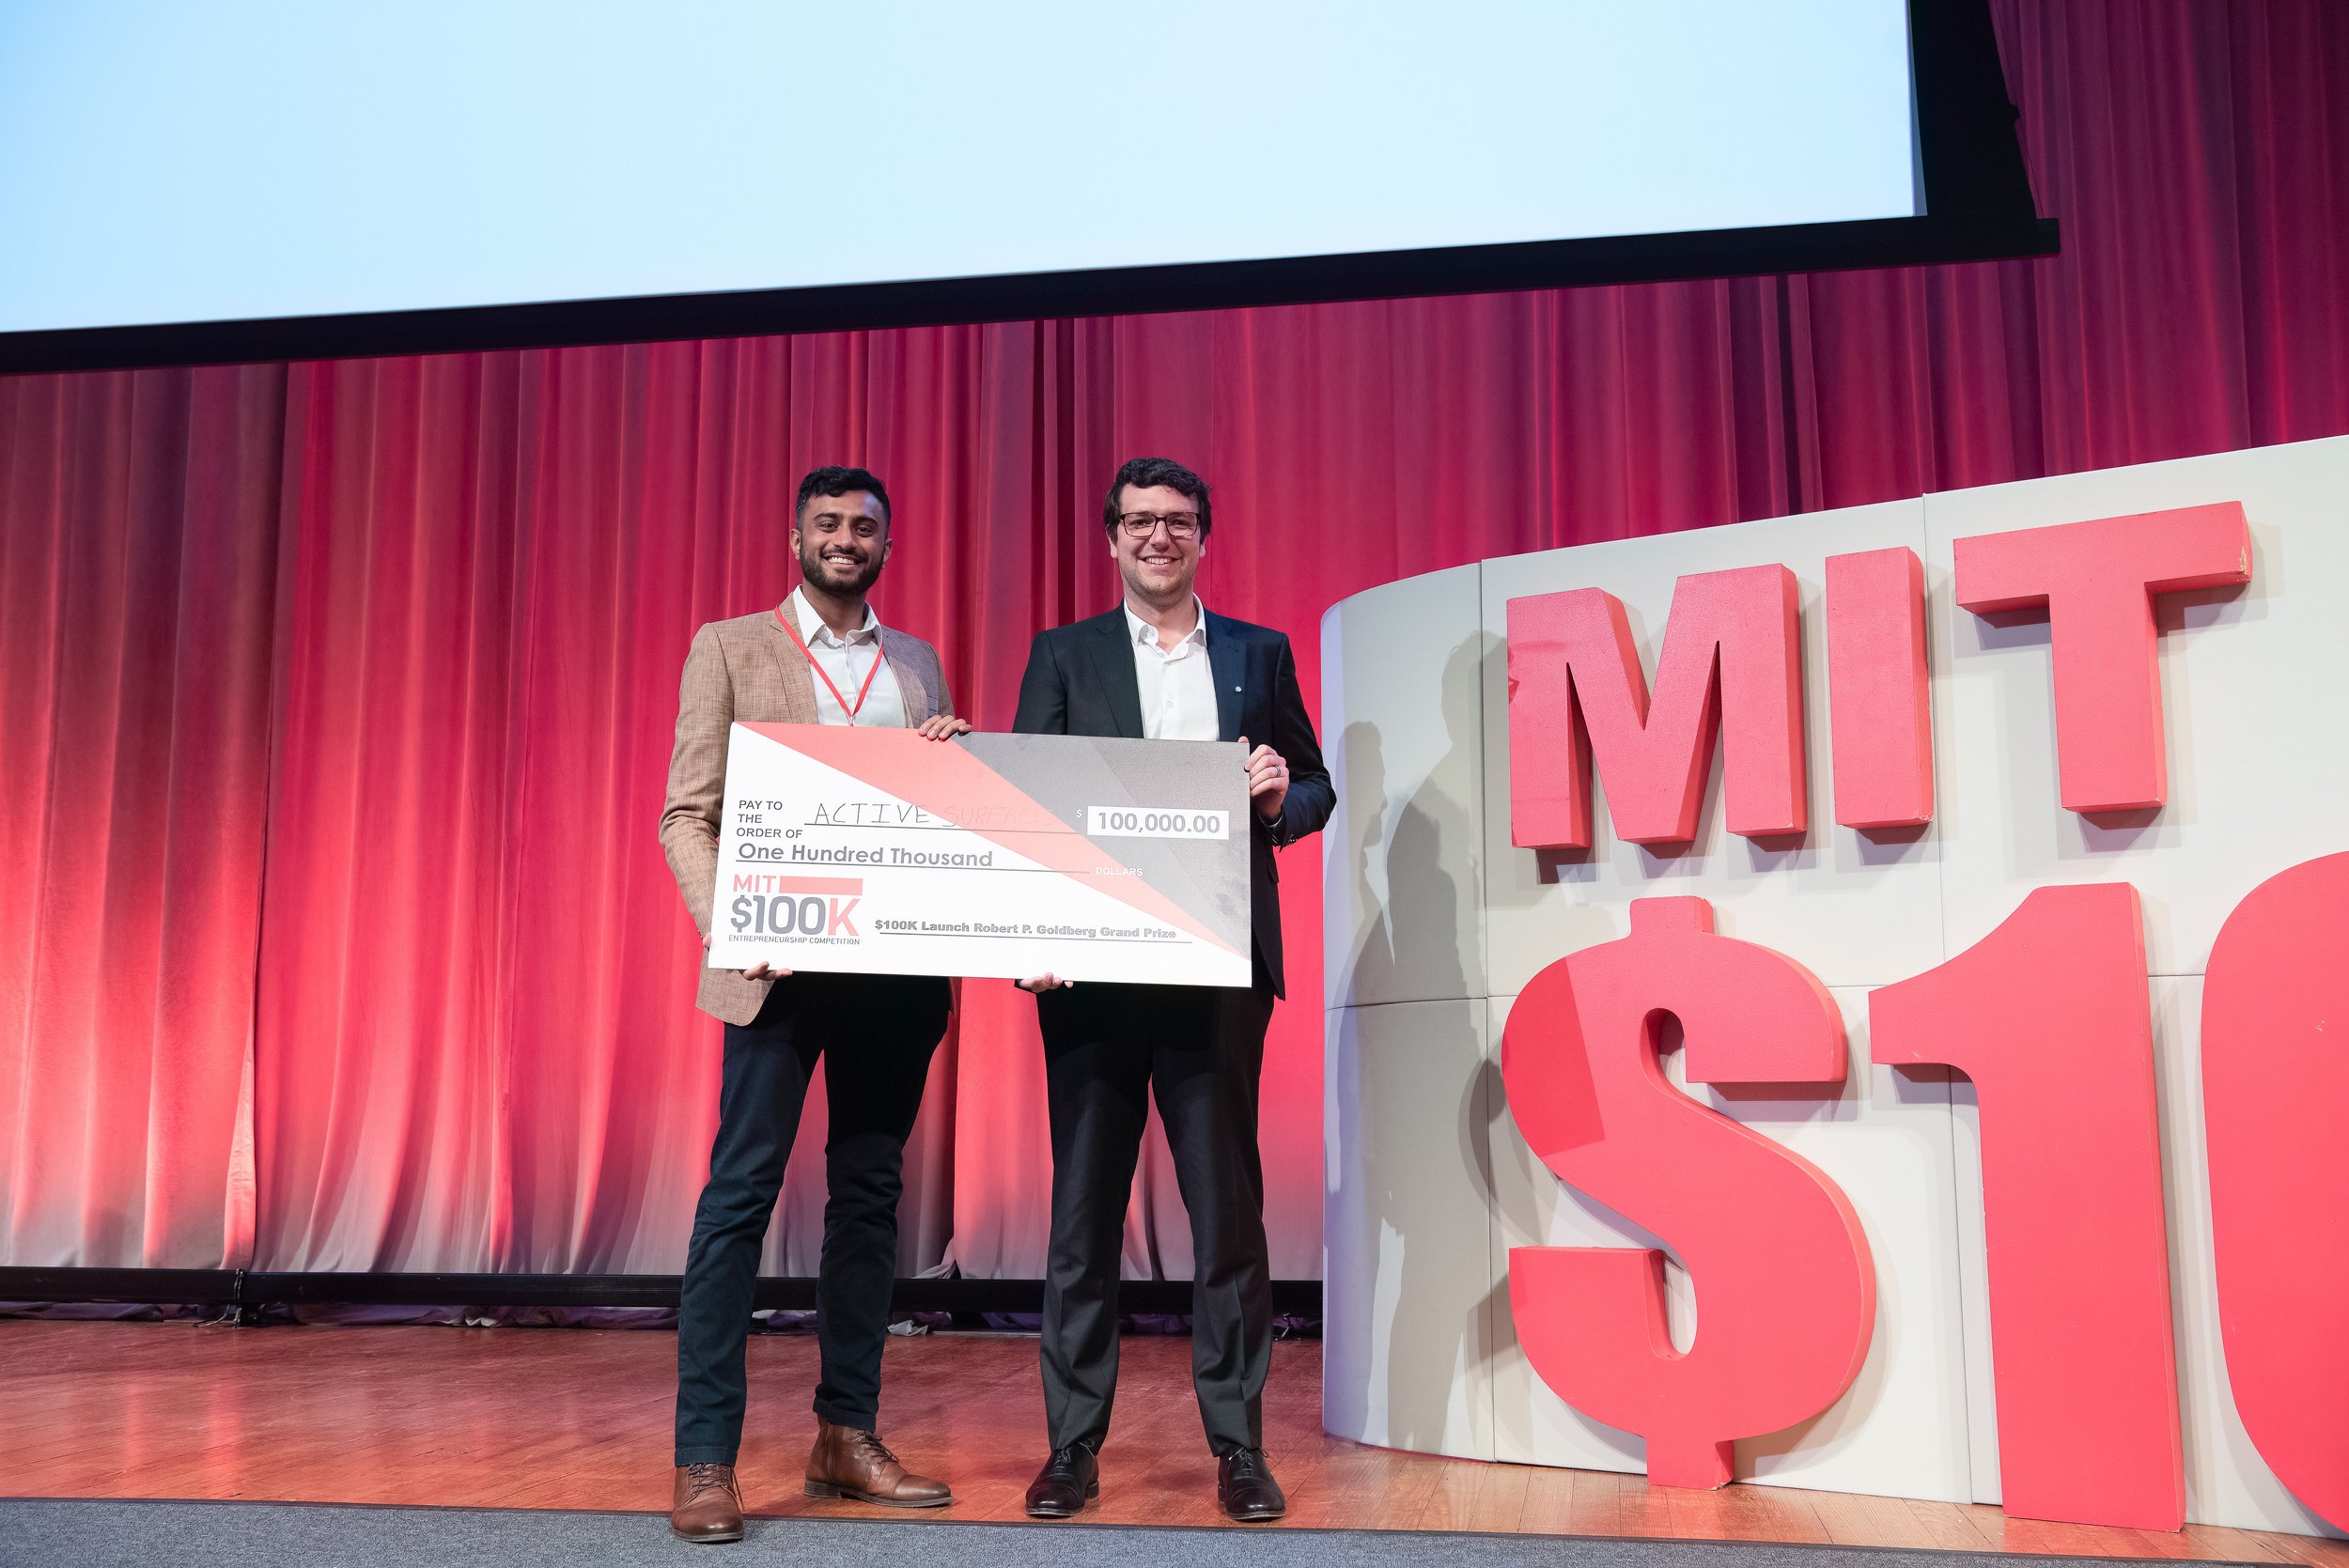 Launch — MIT $100K